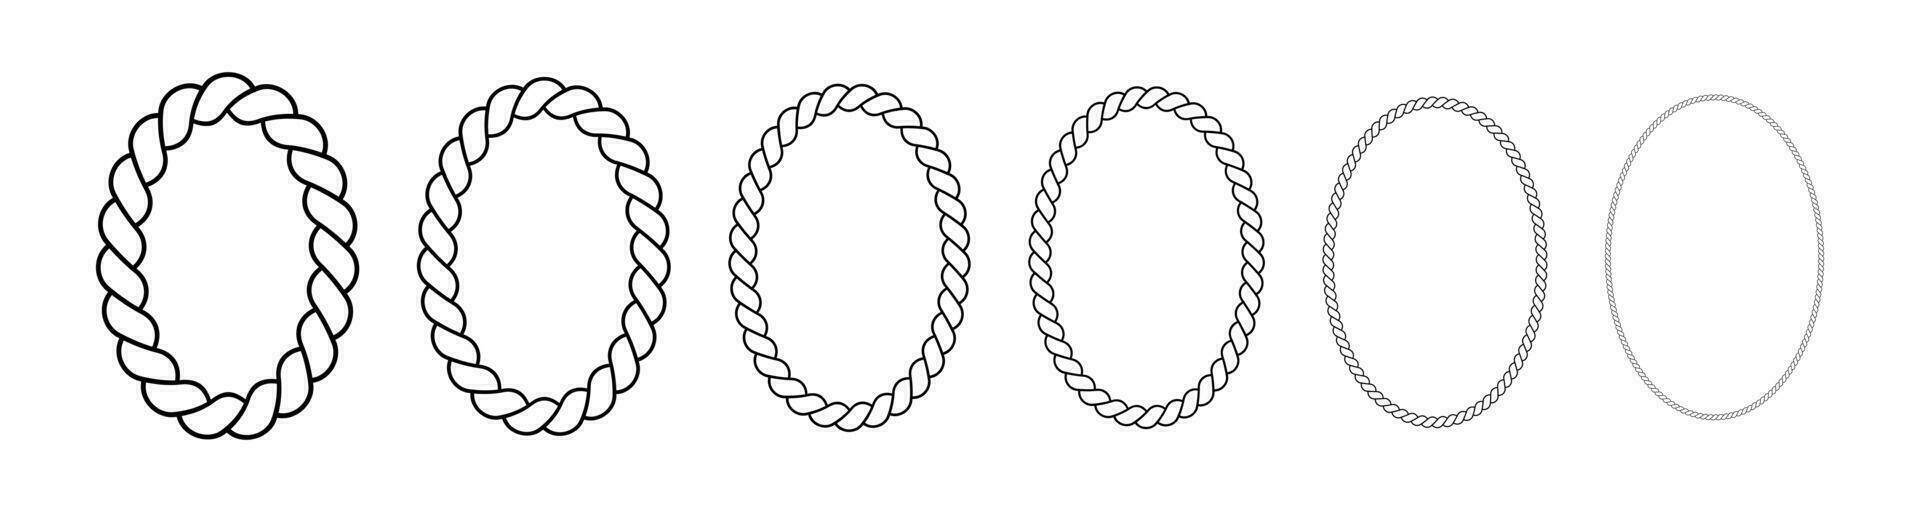 oval quadros fez do corda. elipse fronteiras fez do trançado cordão. vetor conjunto do fino e Grosso elementos isolado em uma branco fundo.